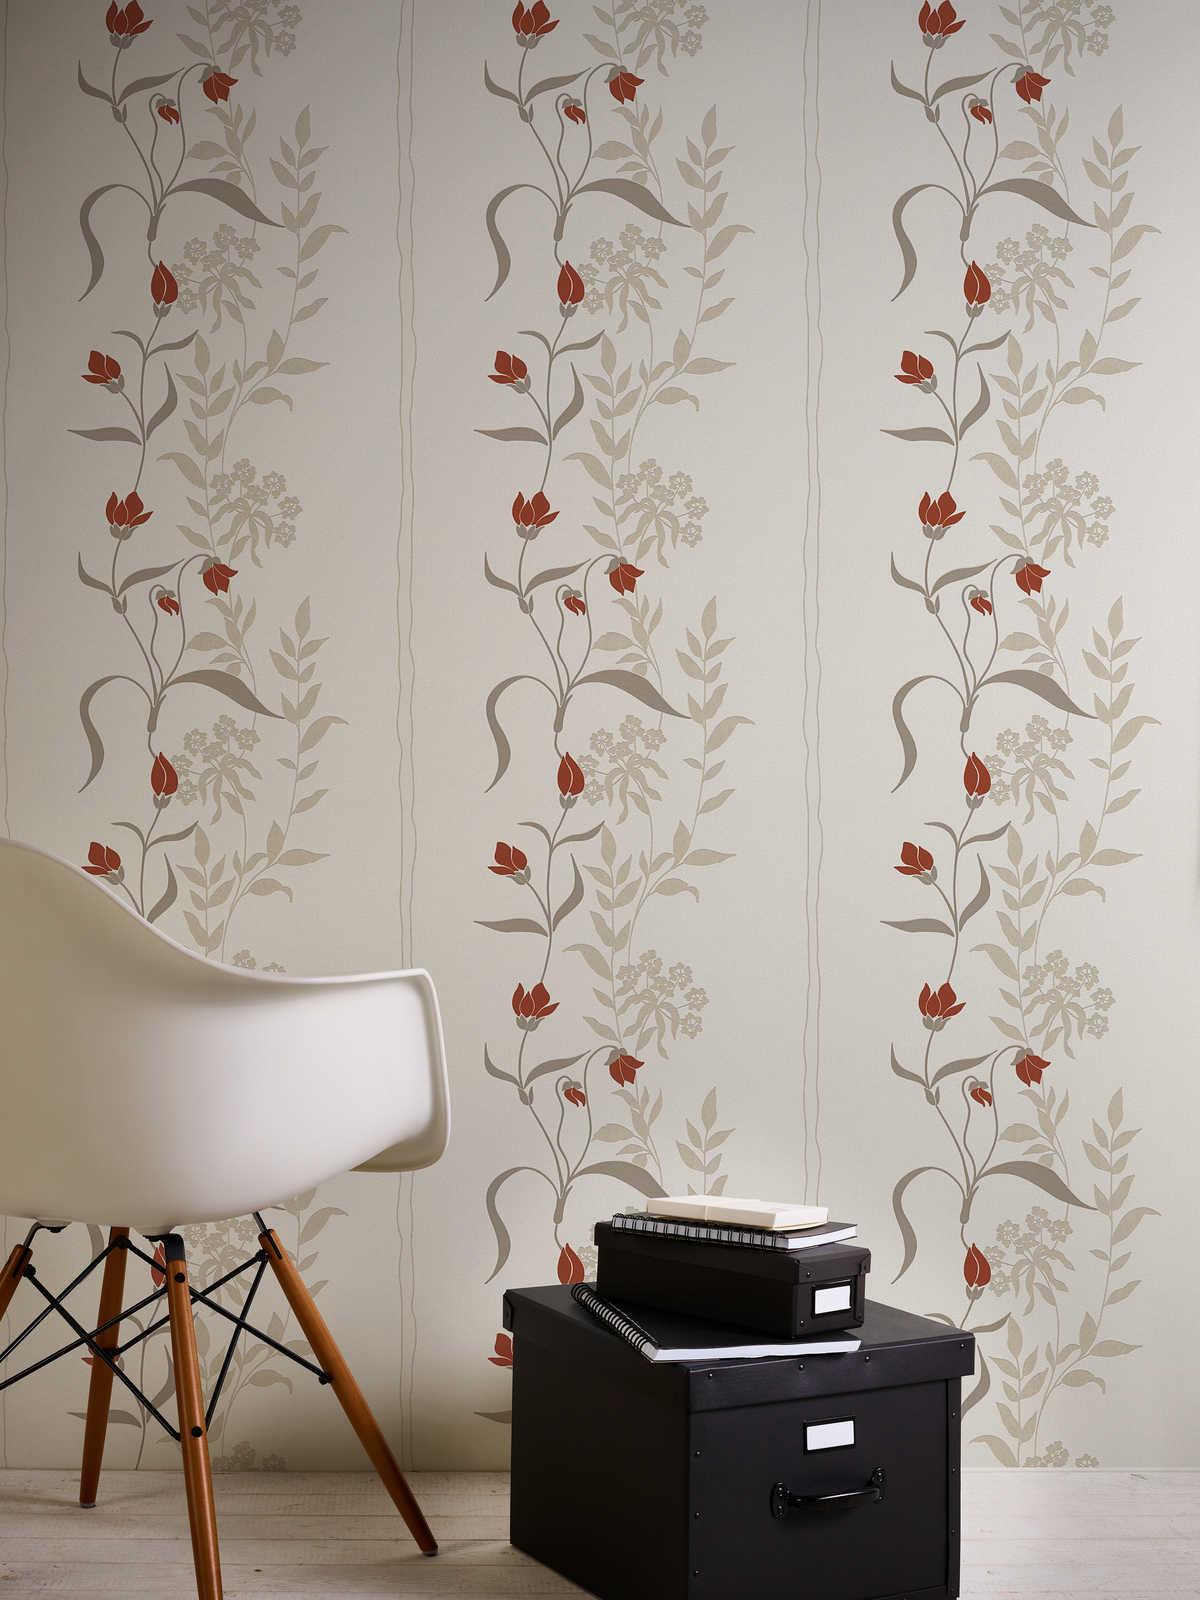             Papel pintado de salón con zarcillos de flores - beige, marrón, rojo
        